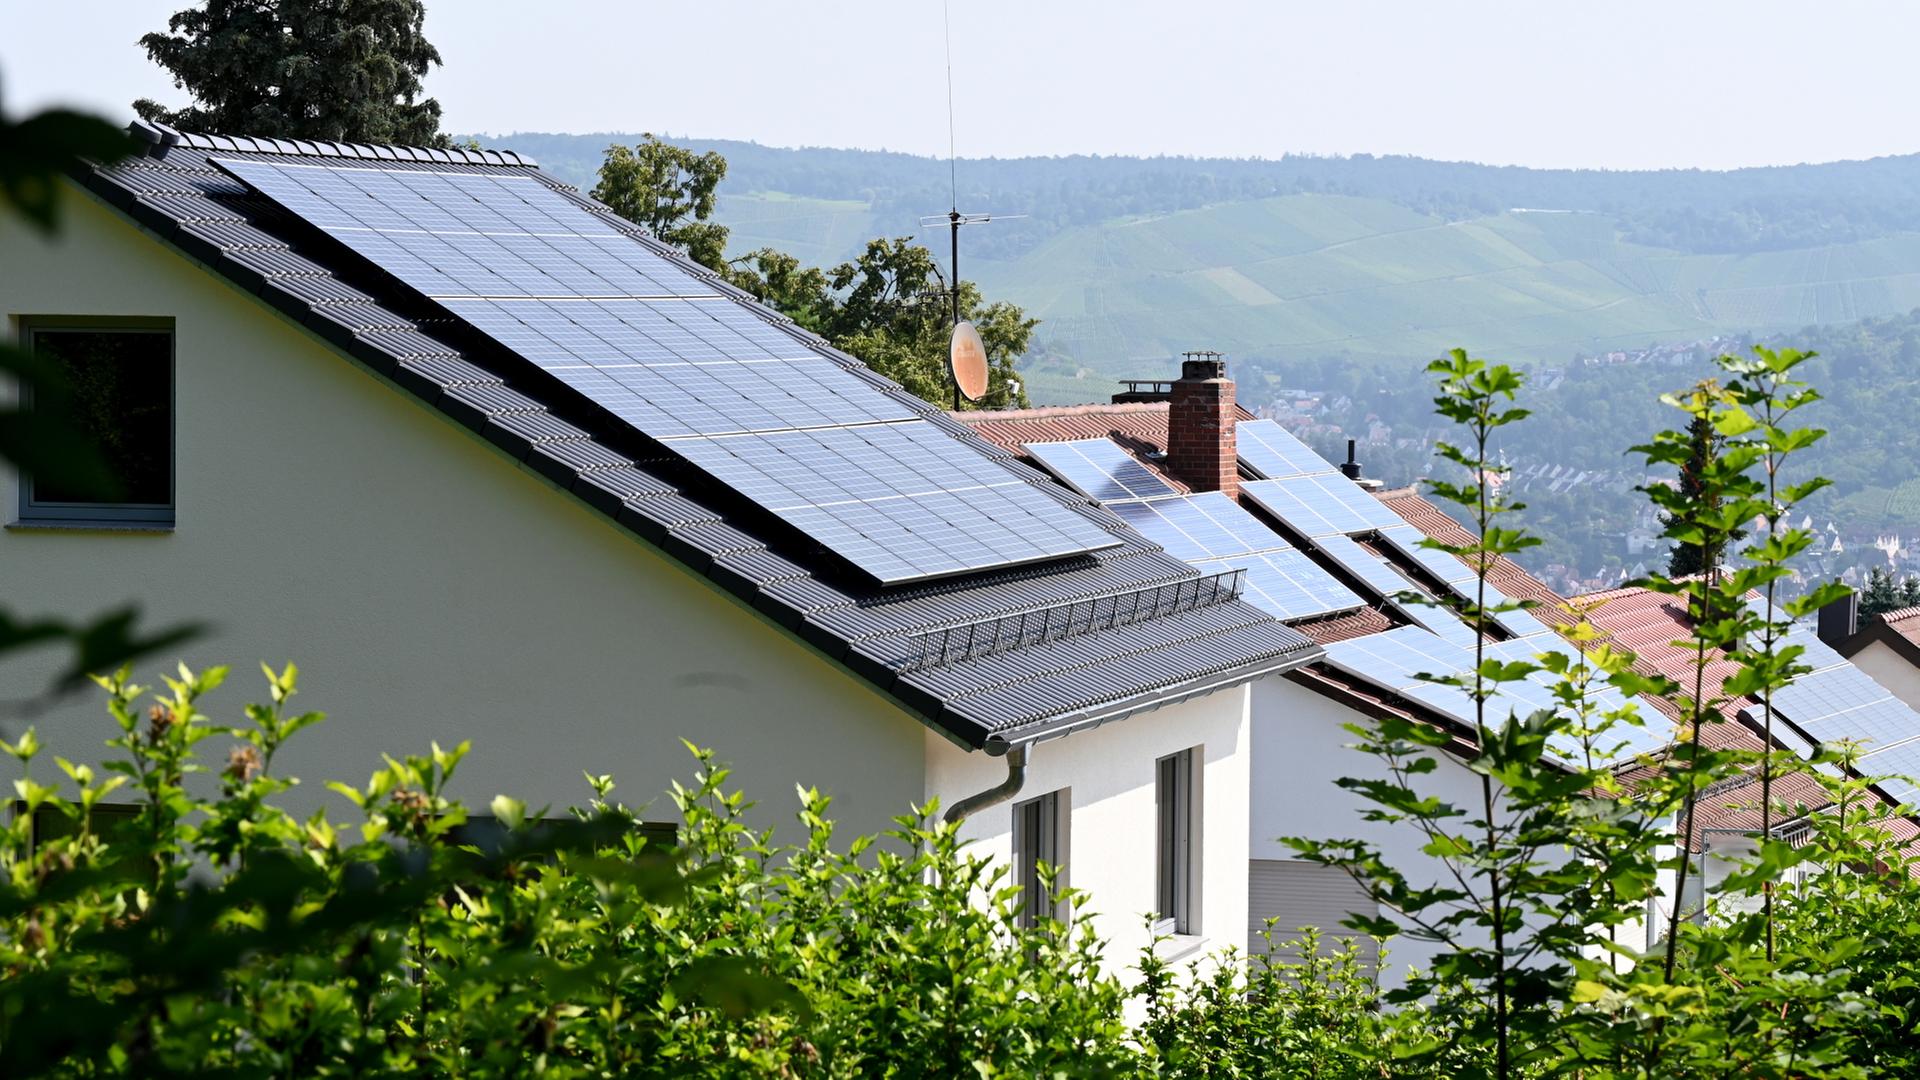 Energieberater: Eine Solaranlage rechnet sich, eine Gasheizung niemals